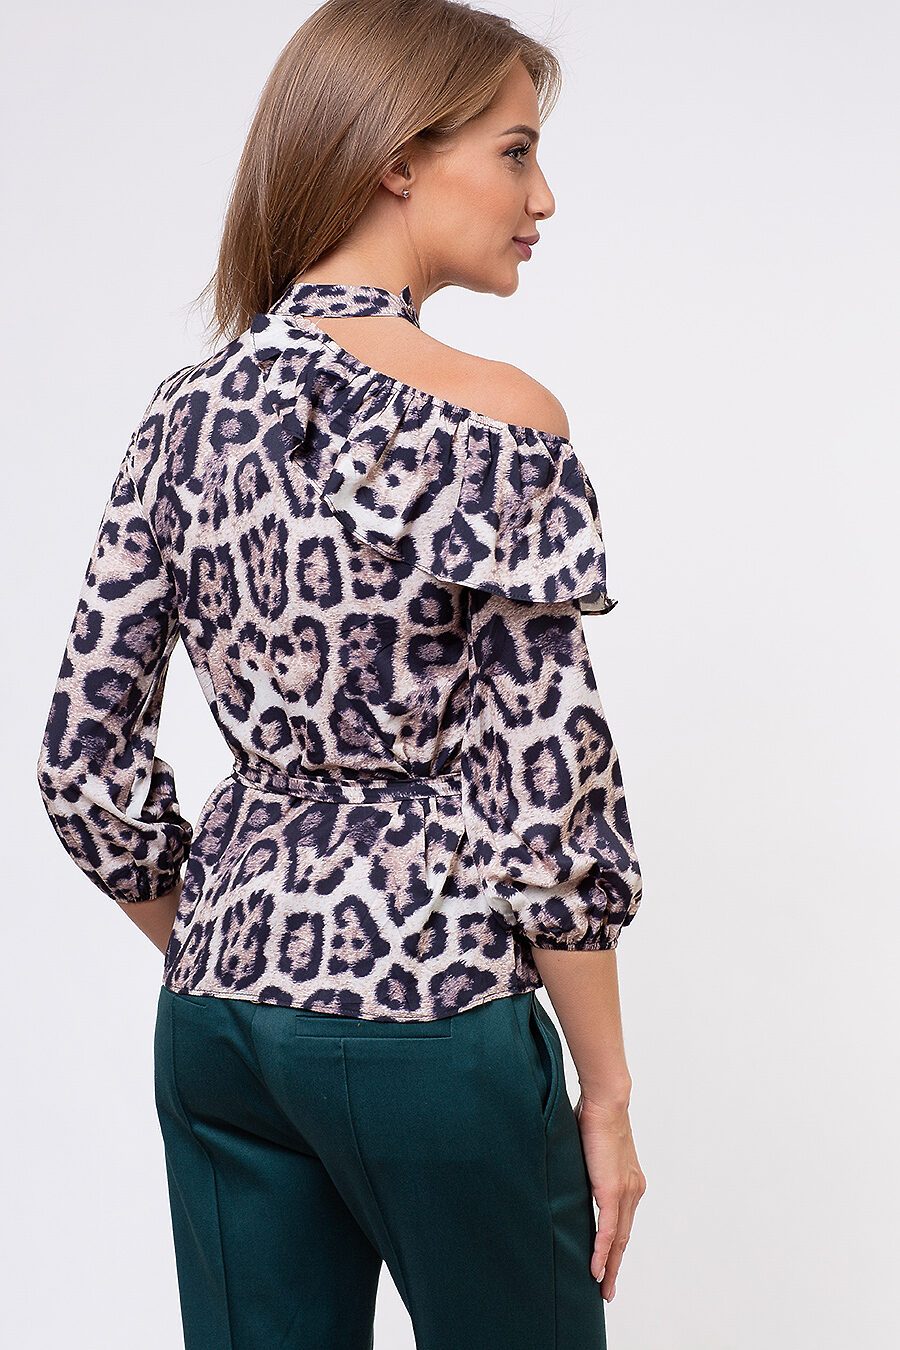 Блуза TUTACHI (127363), купить в Moyo.moda